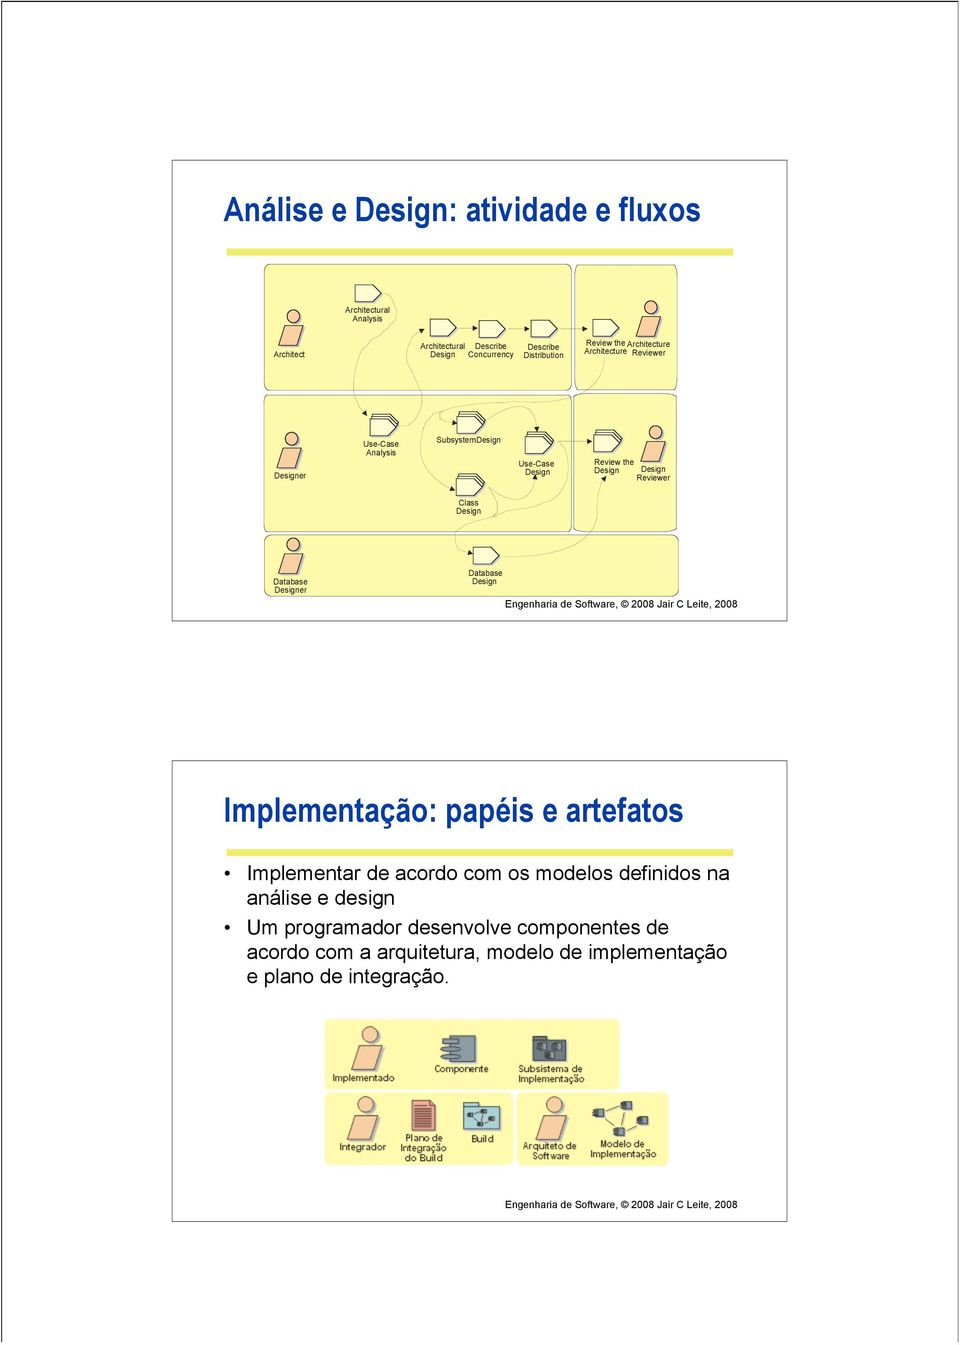 Reviewer Class Design Database Designer Database Design Implementação: papéis e artefatos Implementar de acordo com os modelos